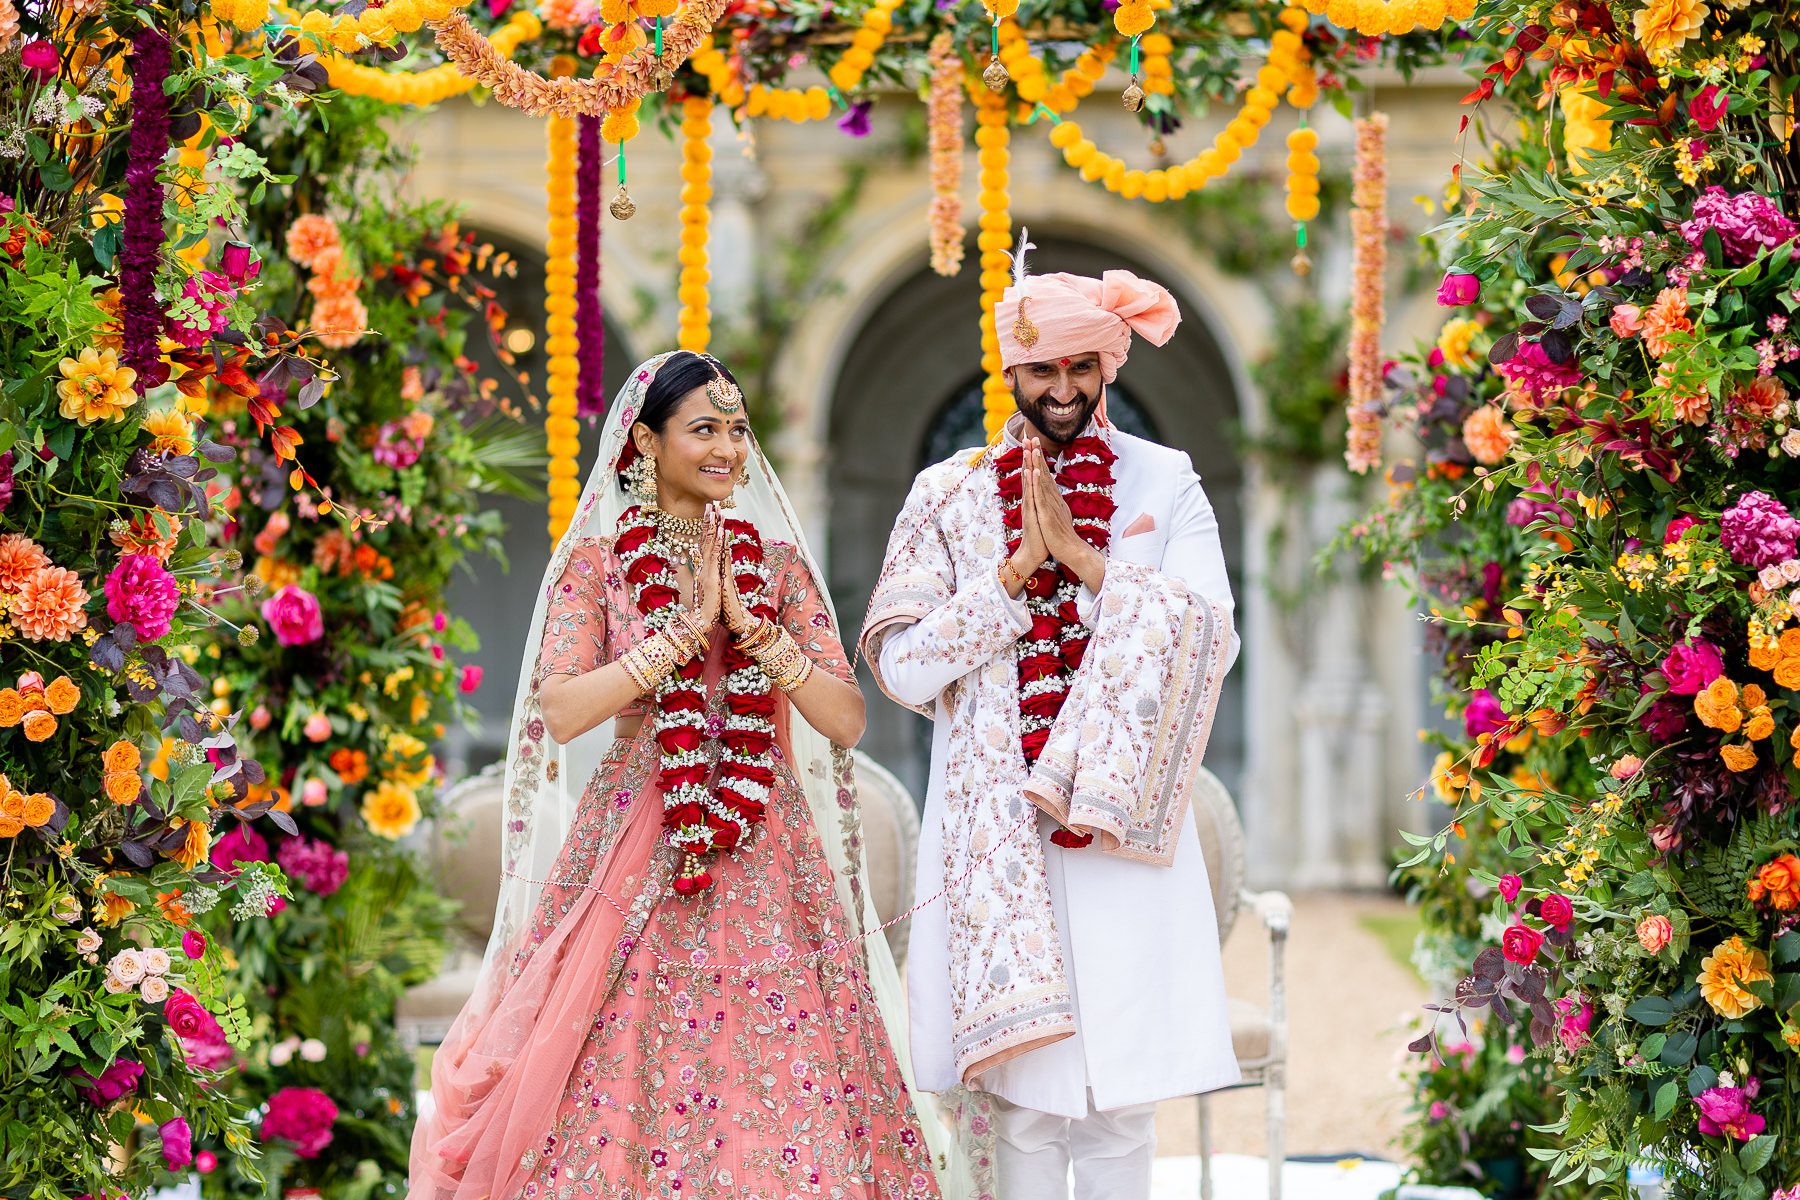 Hindu bride and groom smiling